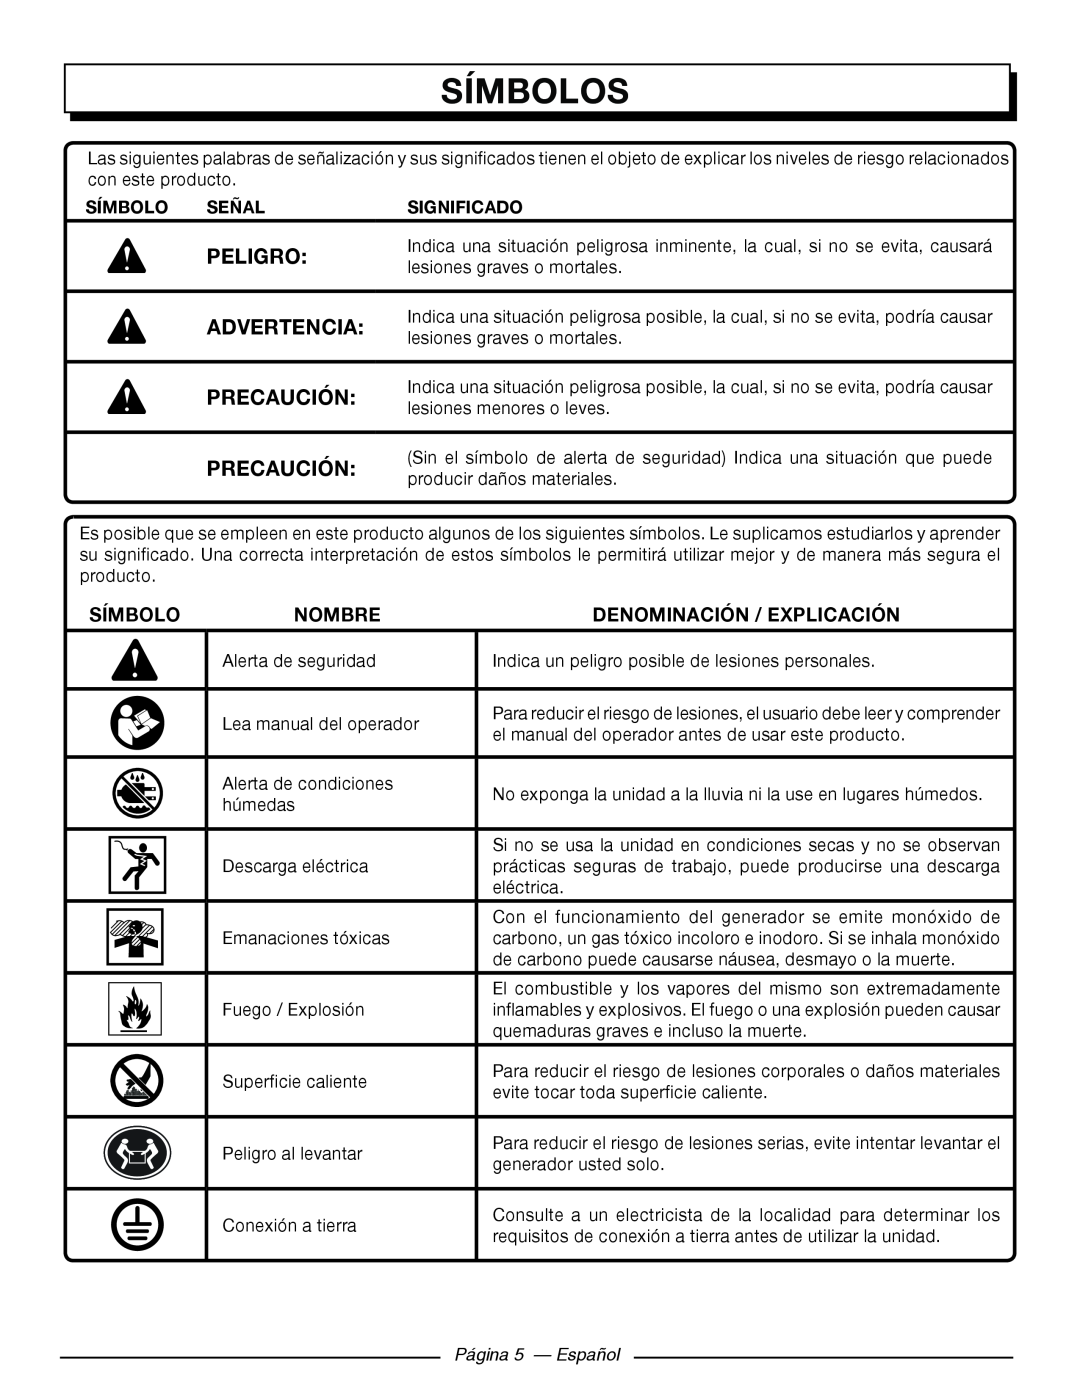 Homelite HGCA5000 Símbolos, Precaución, Nombre, Denominación / Explicación, Señal, Significado, Página 5 - Español 